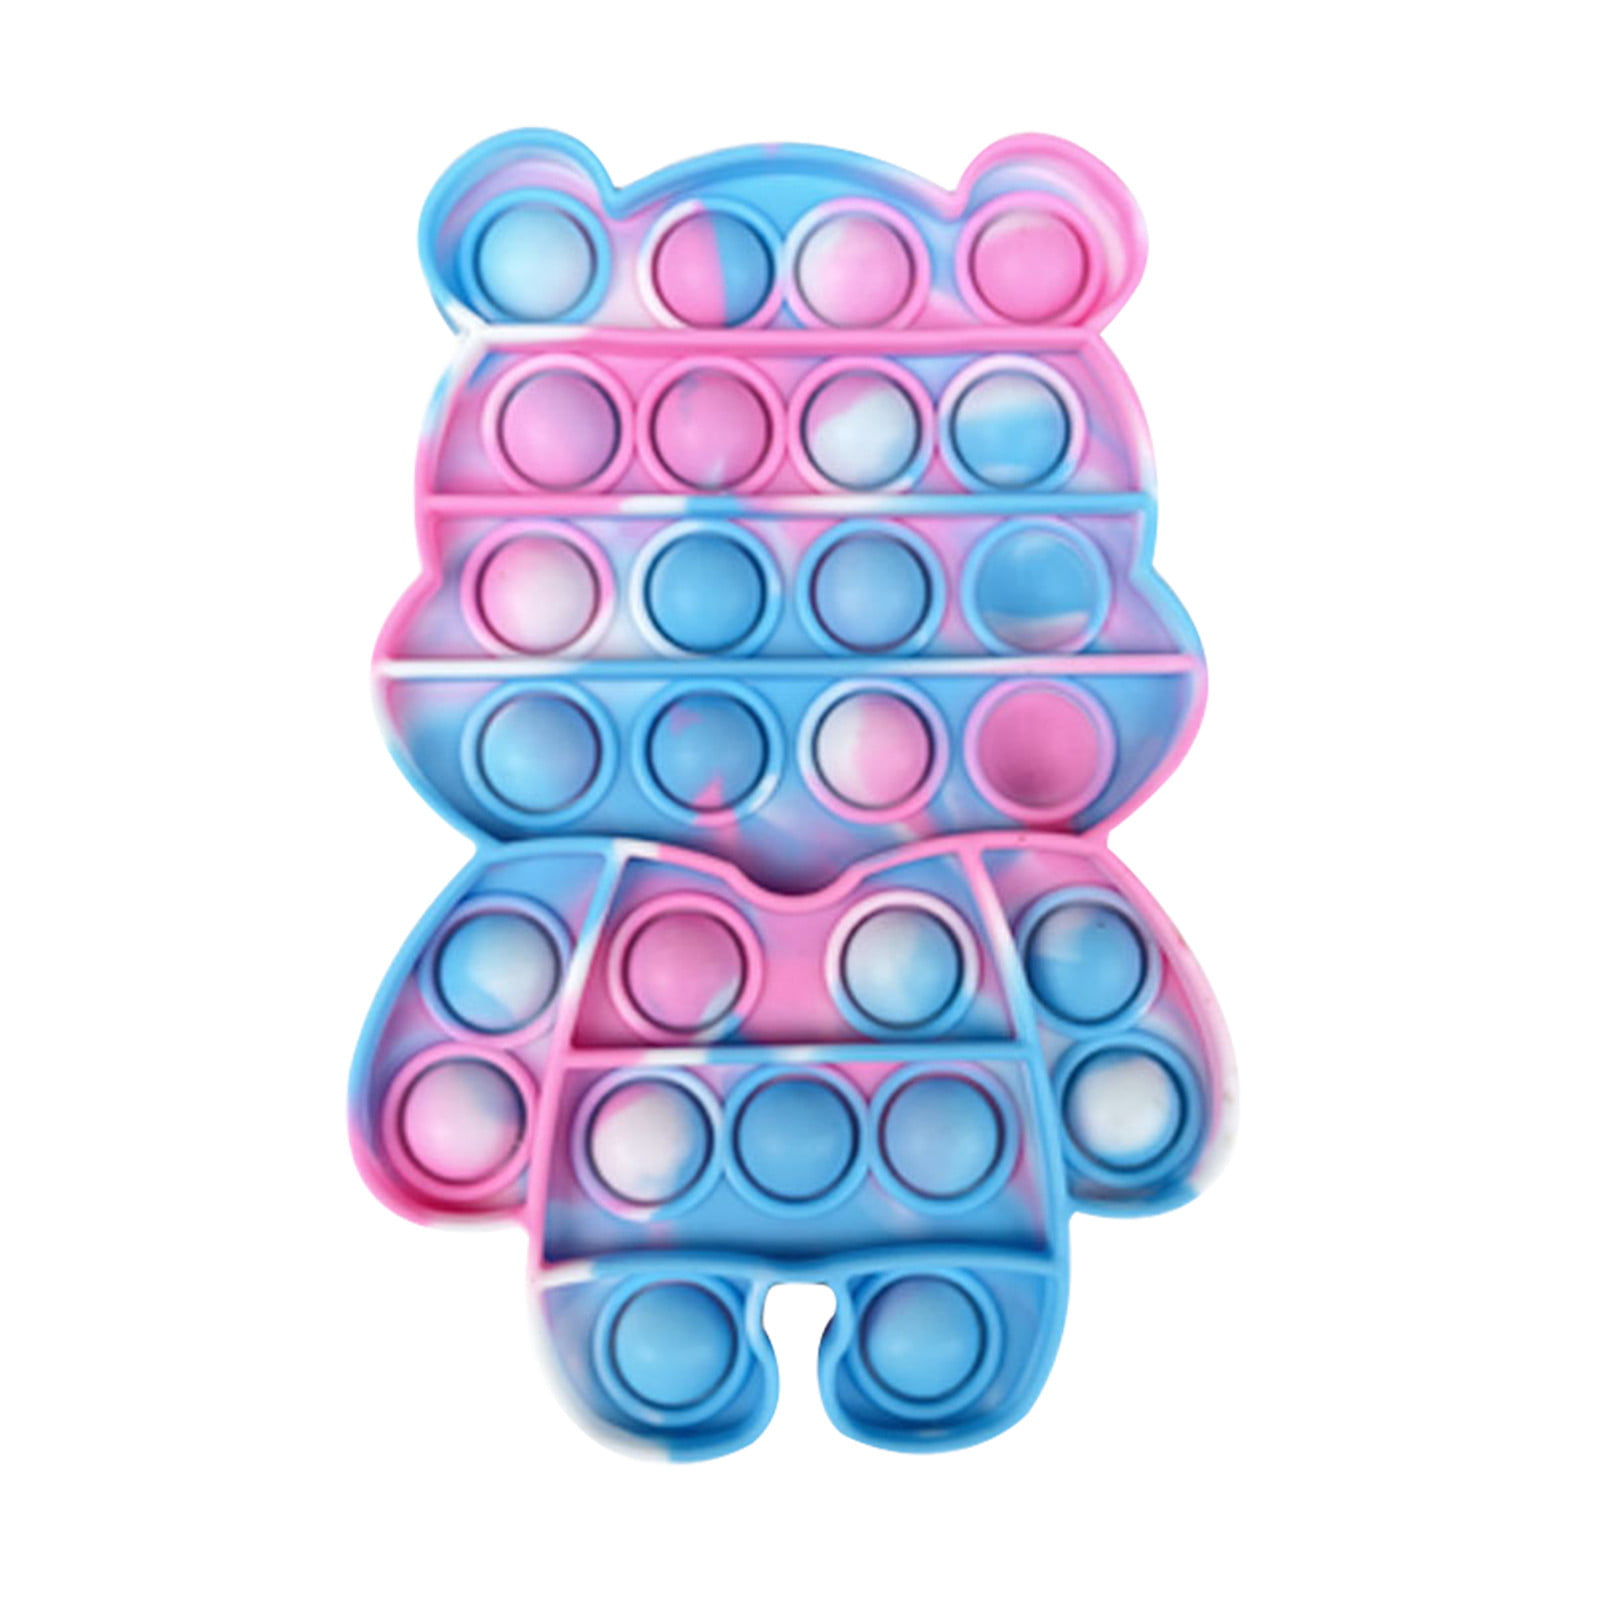 Details about   Push Pop It Kids Toy Bubble Special Needs Silent Sensory Fidget Autism Classroom 